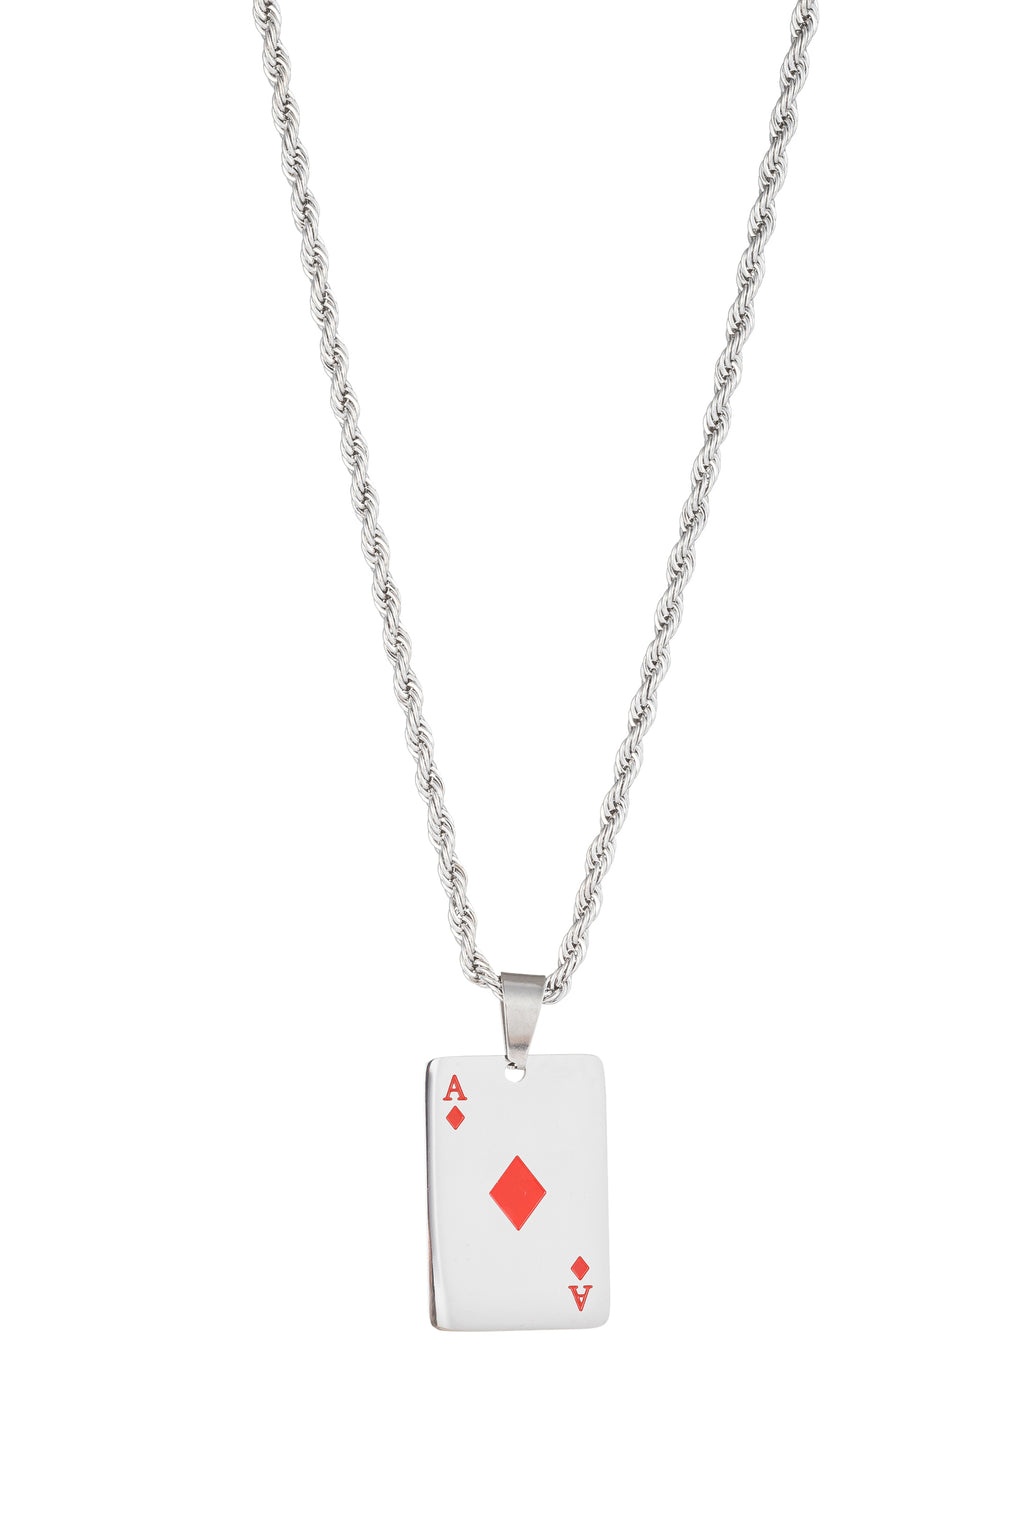 Ace of diamonds pendant necklace.